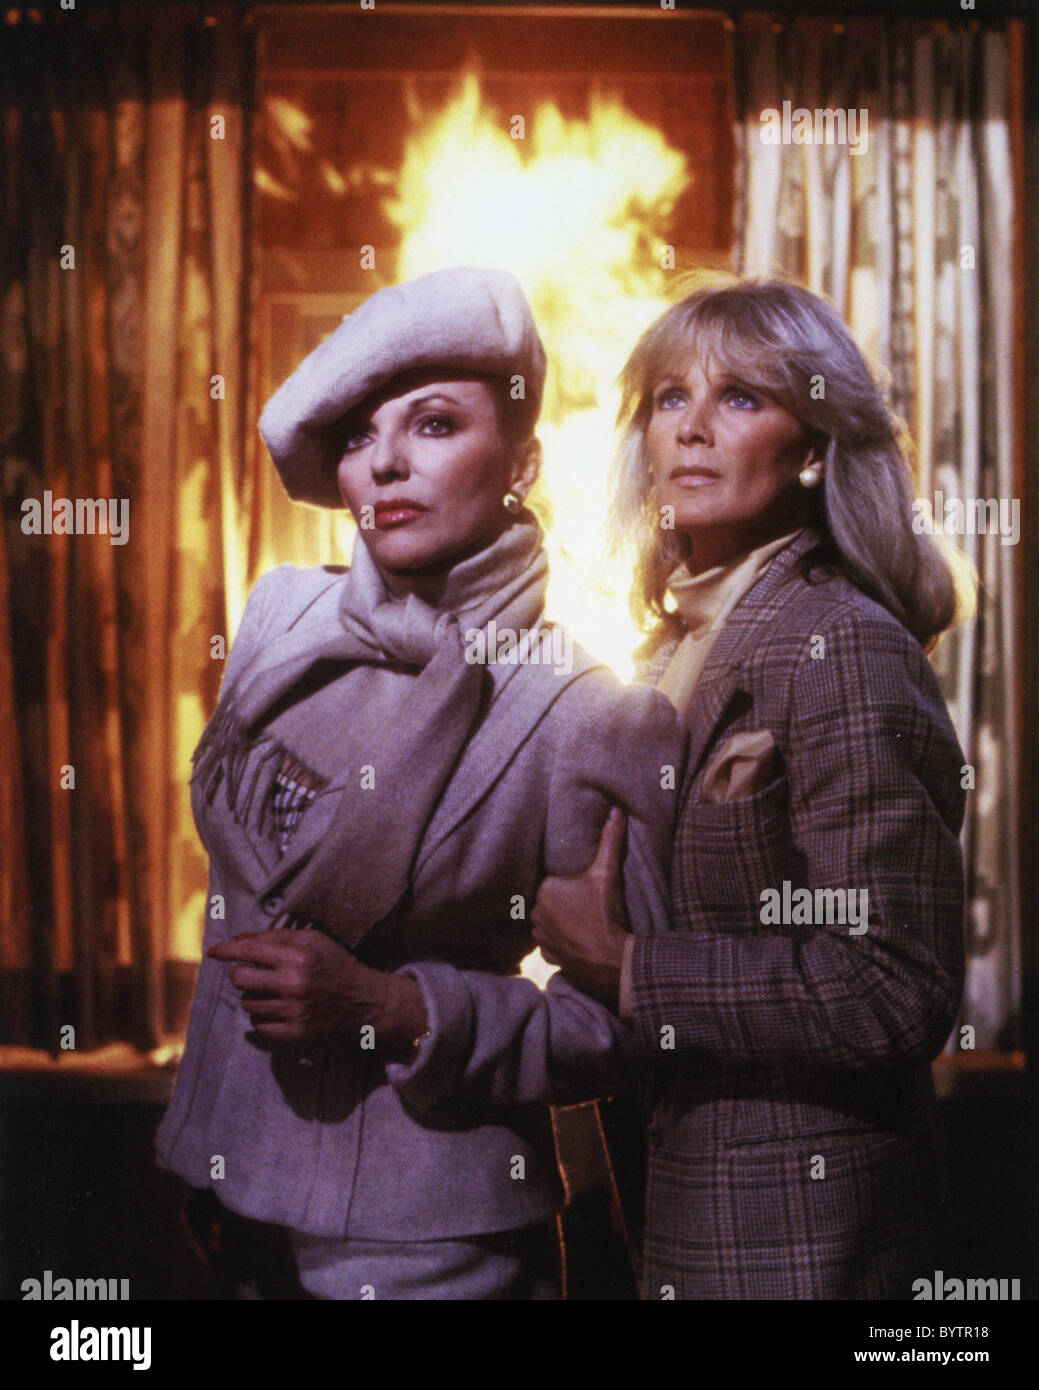 Aaron Spelling dynastie séries télévisées américaines (1981-1989) avec Joan Collins à gauche comme Alexis Colby et Linda Evans comme Krystie Carrington Banque D'Images